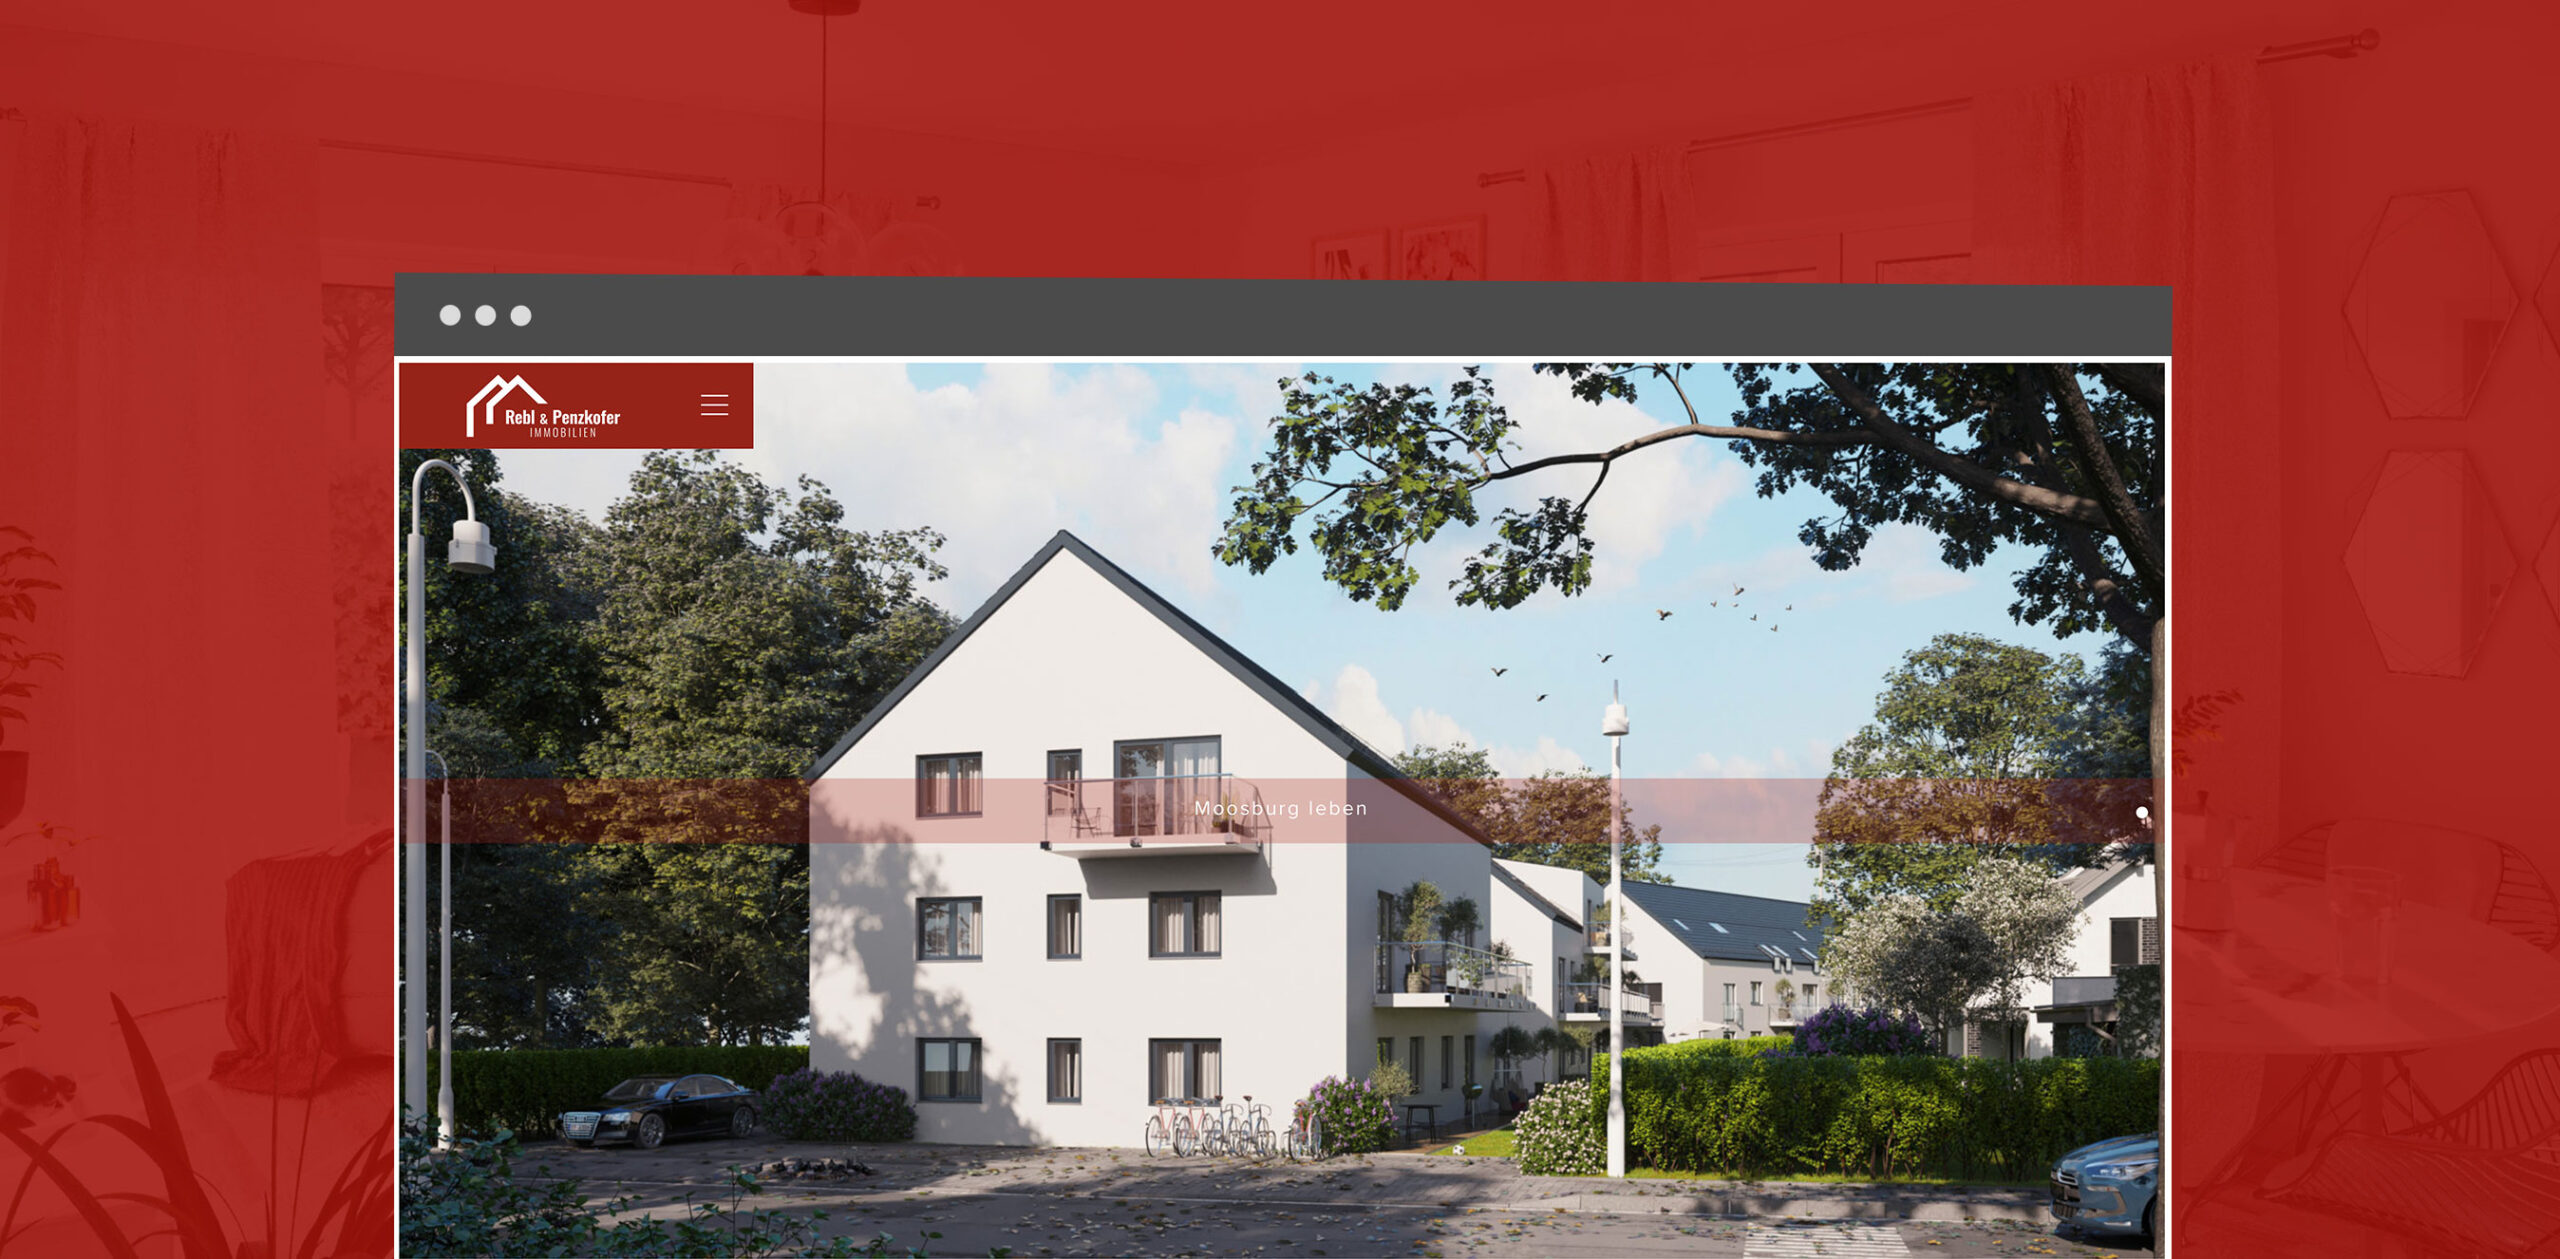 Rebl und Penzkofer Website Immobilien Startseite